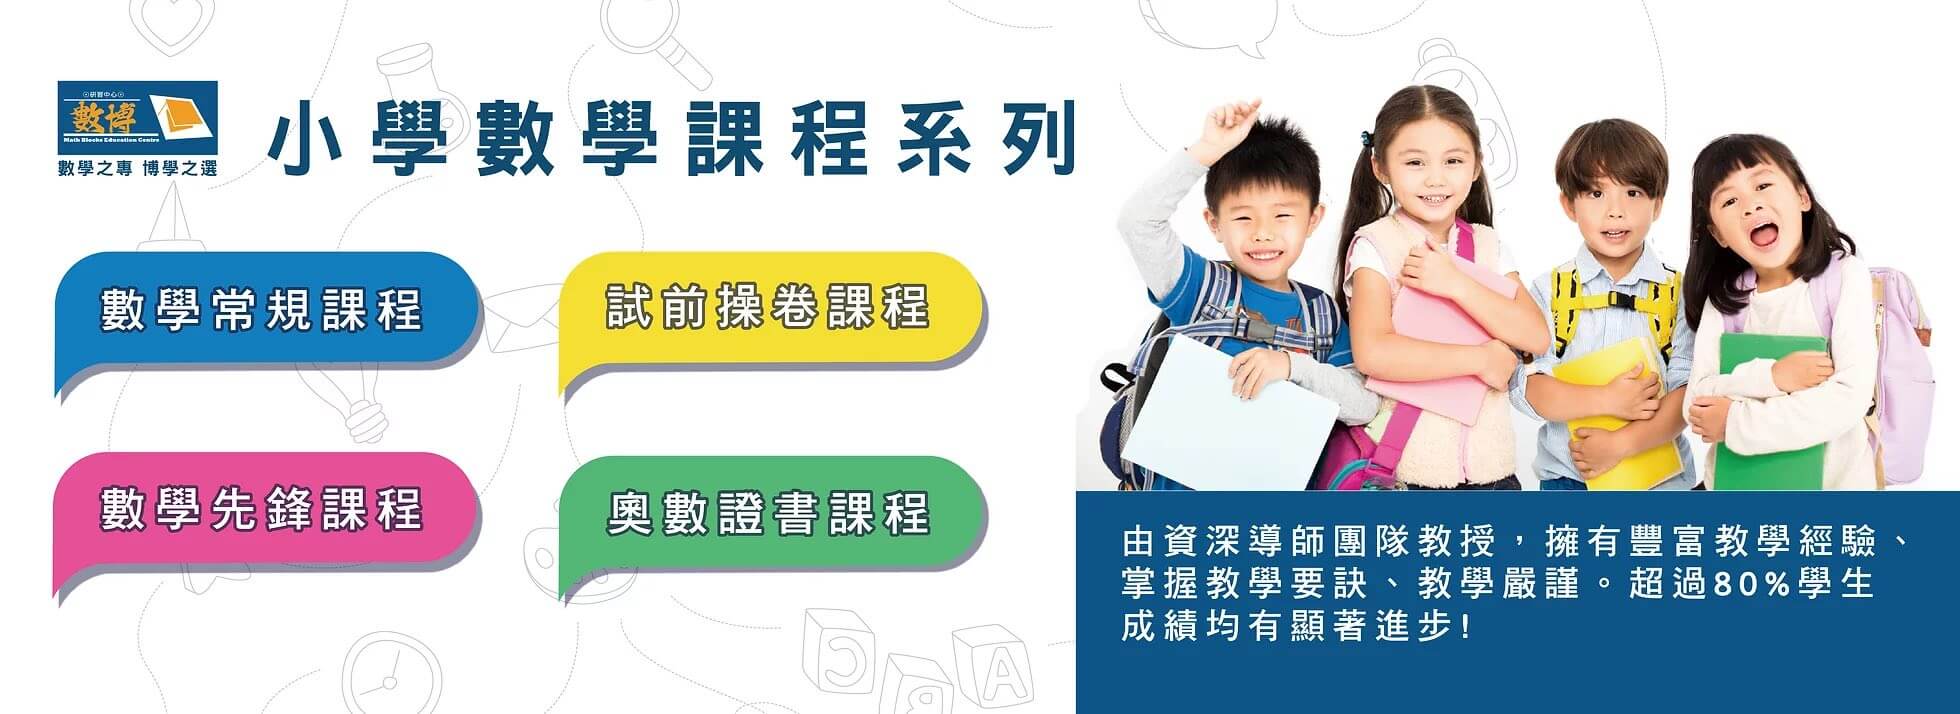 數博研習中心 Math Blocks Education Centre的特許經營香港區加盟店項目2